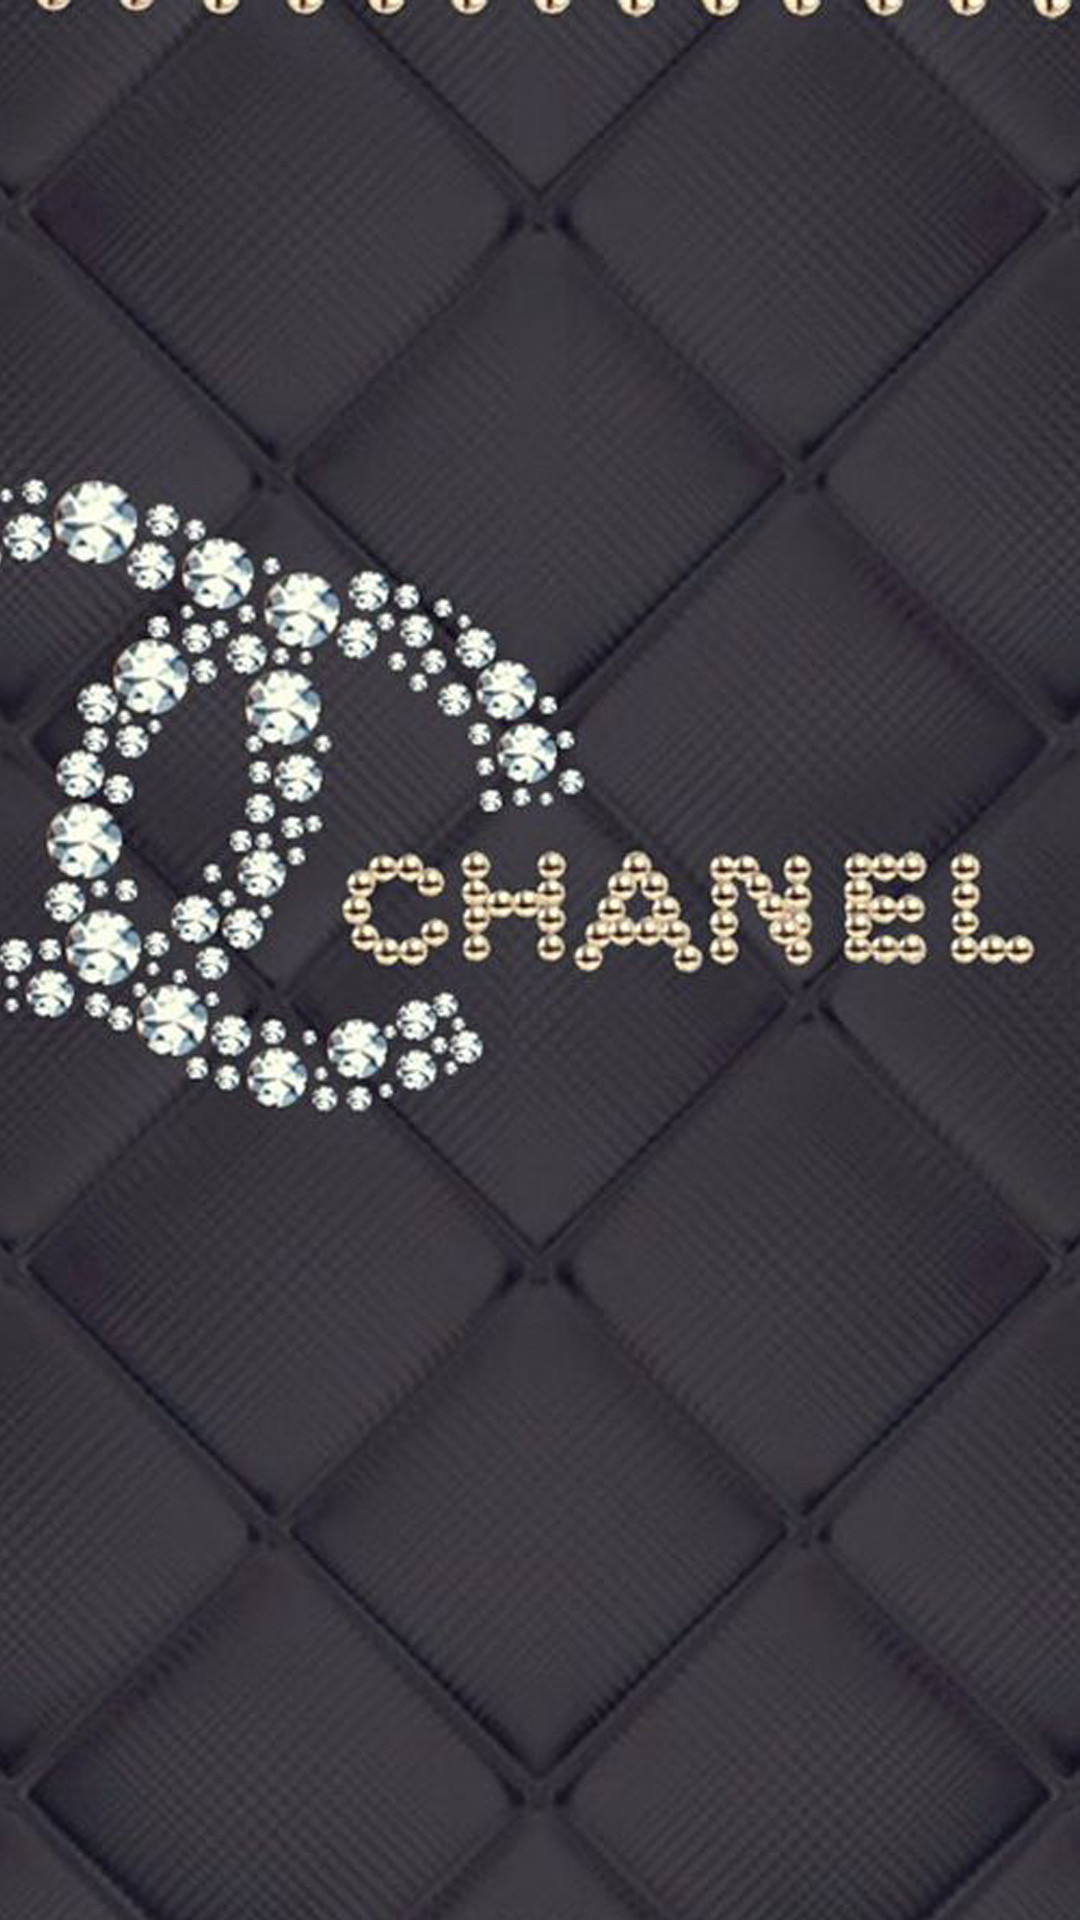 シャネル Chanel ブランドのiphone X壁紙 Iphone Wallpapers